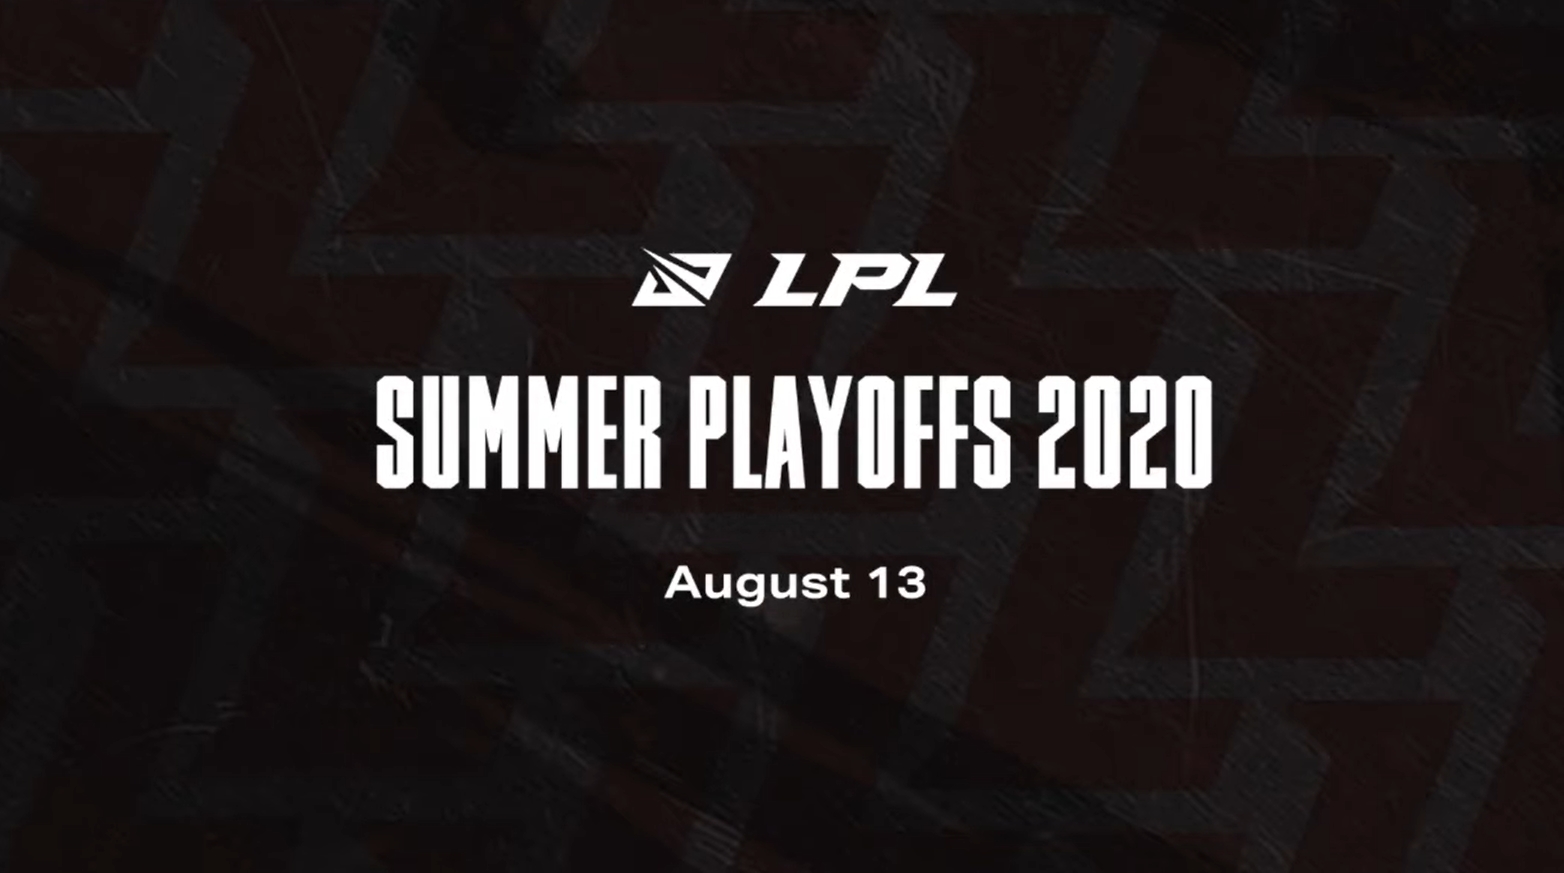 LPL on X: The #LPL Summer Playoffs will kick off on August 16th